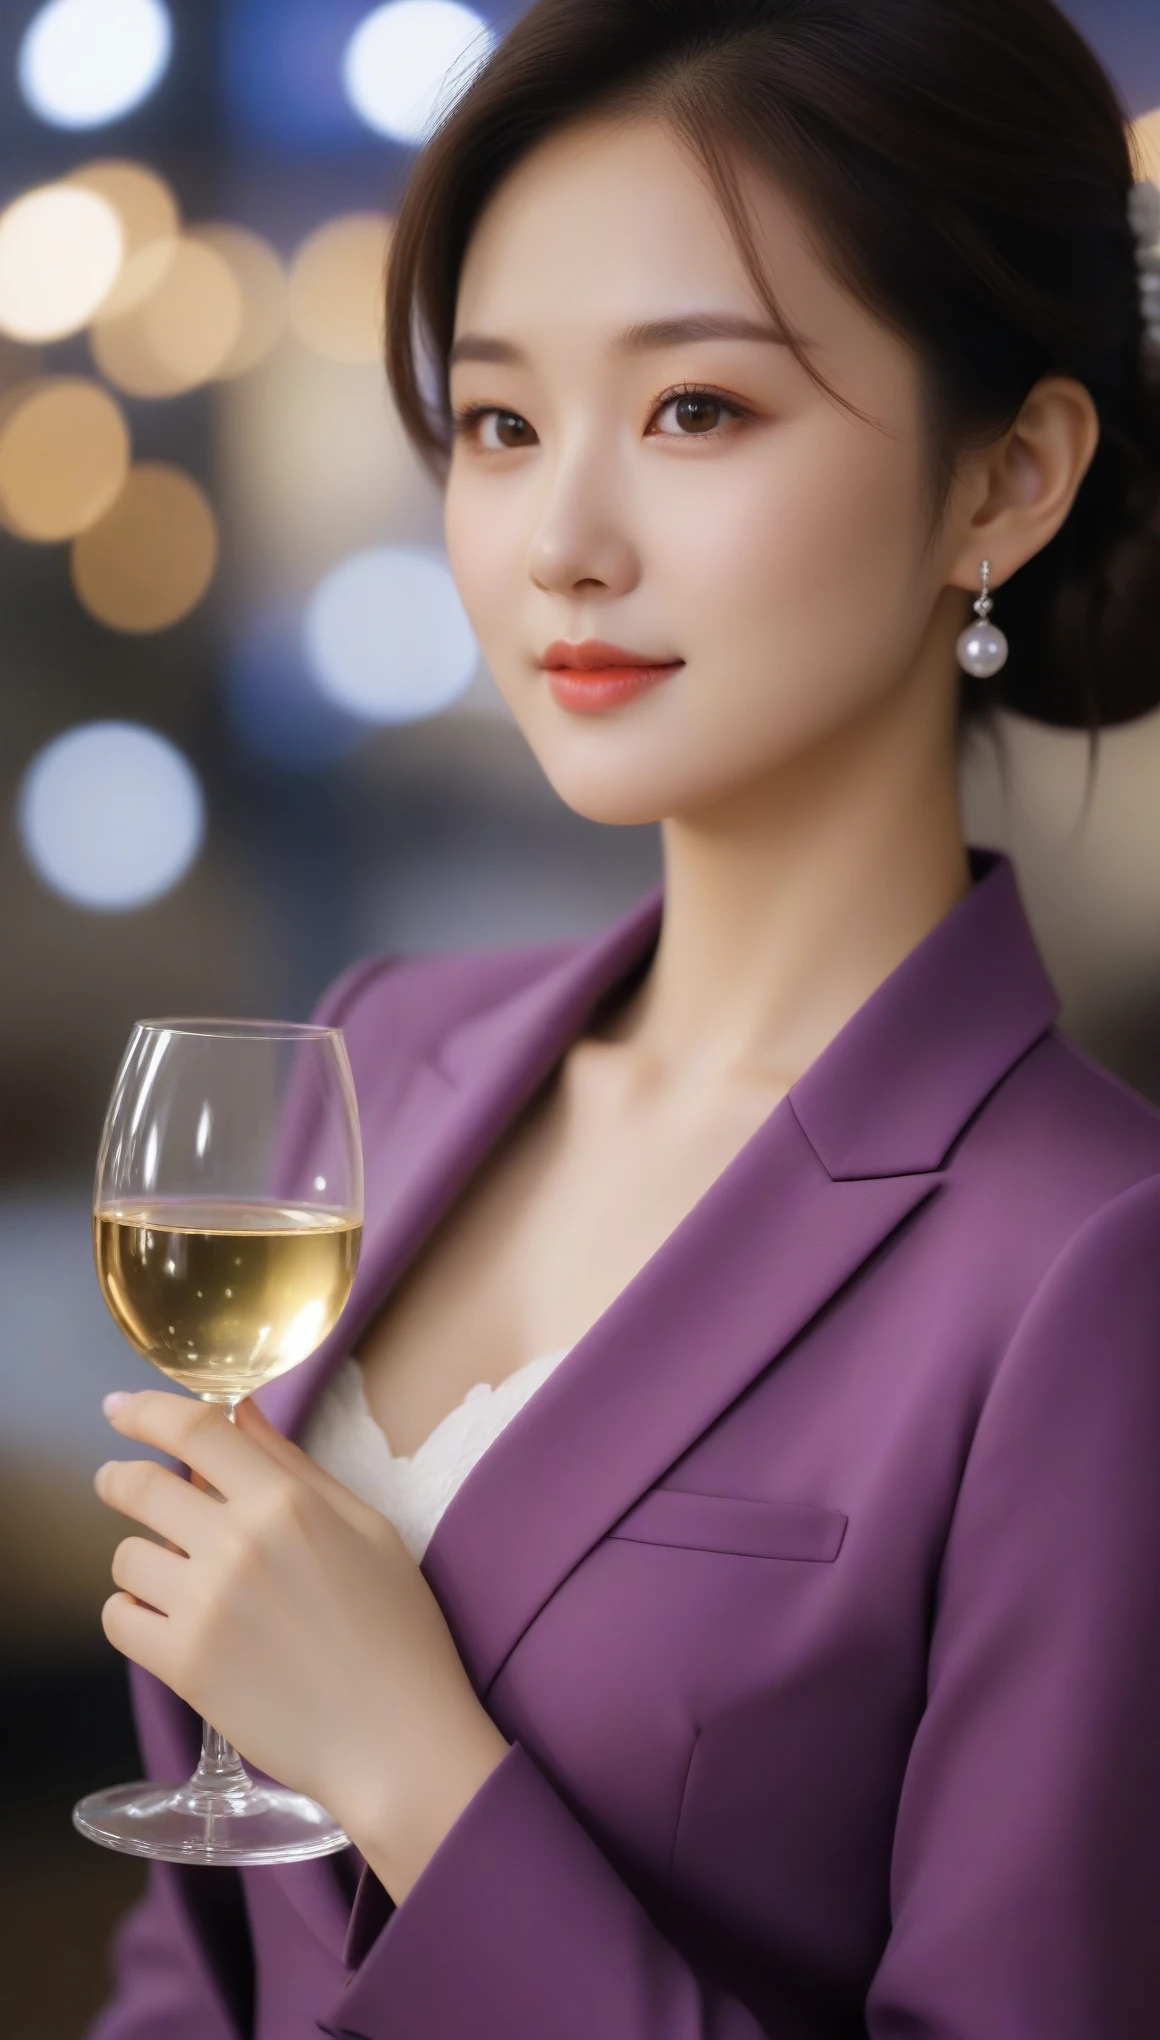 Nahaufnahme, Seitenaufnahme einer schönen koreanischen Frau, 34 Zoll Brustgröße, leicht lächeln, trägt lila Anzug, weißer Handschuh, Weinglas halten, Bokeh-Hintergrund, UHD